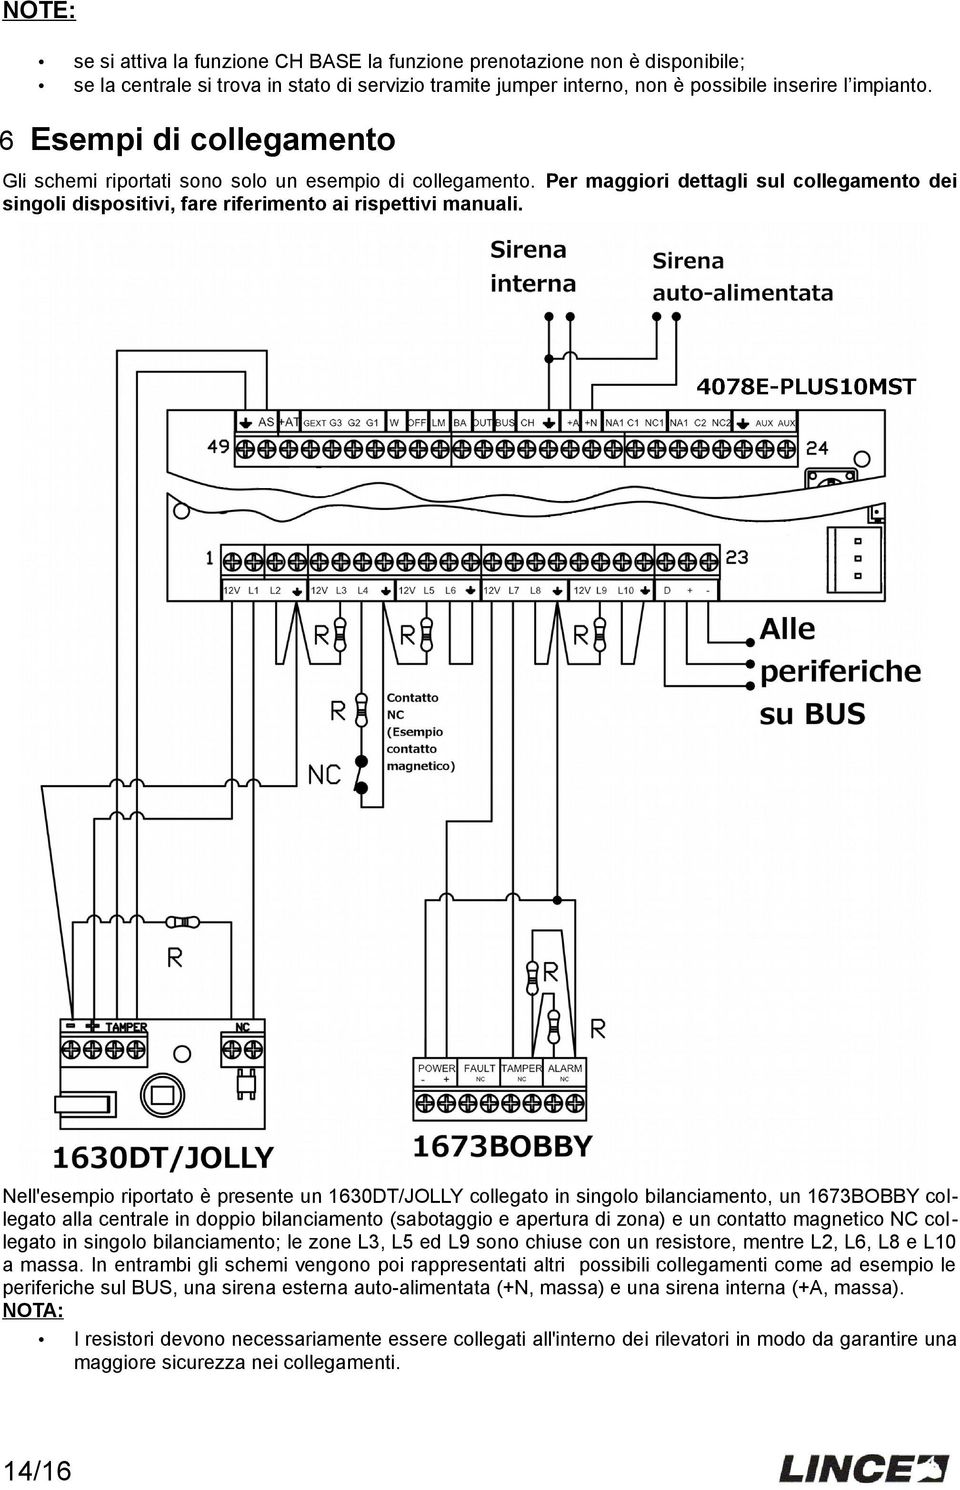 Nell'esempio riportato è presente un 1630DT/JOLLY collegato in singolo bilanciamento, un 1673BOBBY collegato alla centrale in doppio bilanciamento (sabotaggio e apertura di zona) e un contatto